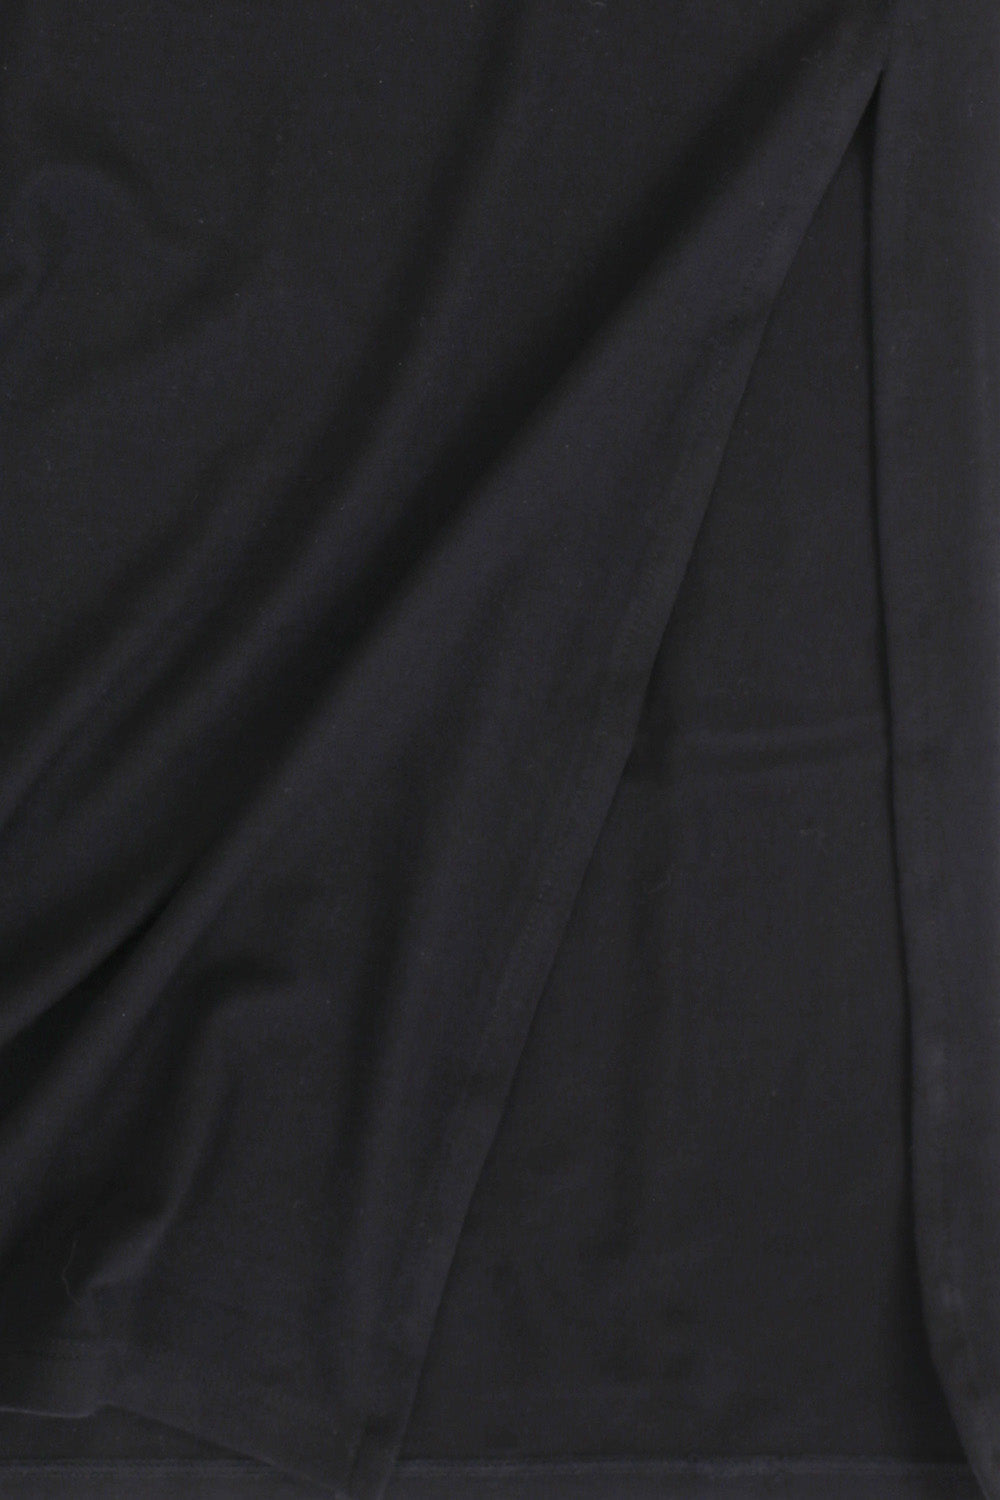 Meisjes Long Skirt van LOOXS 10sixteen in de kleur Black in maat 176.